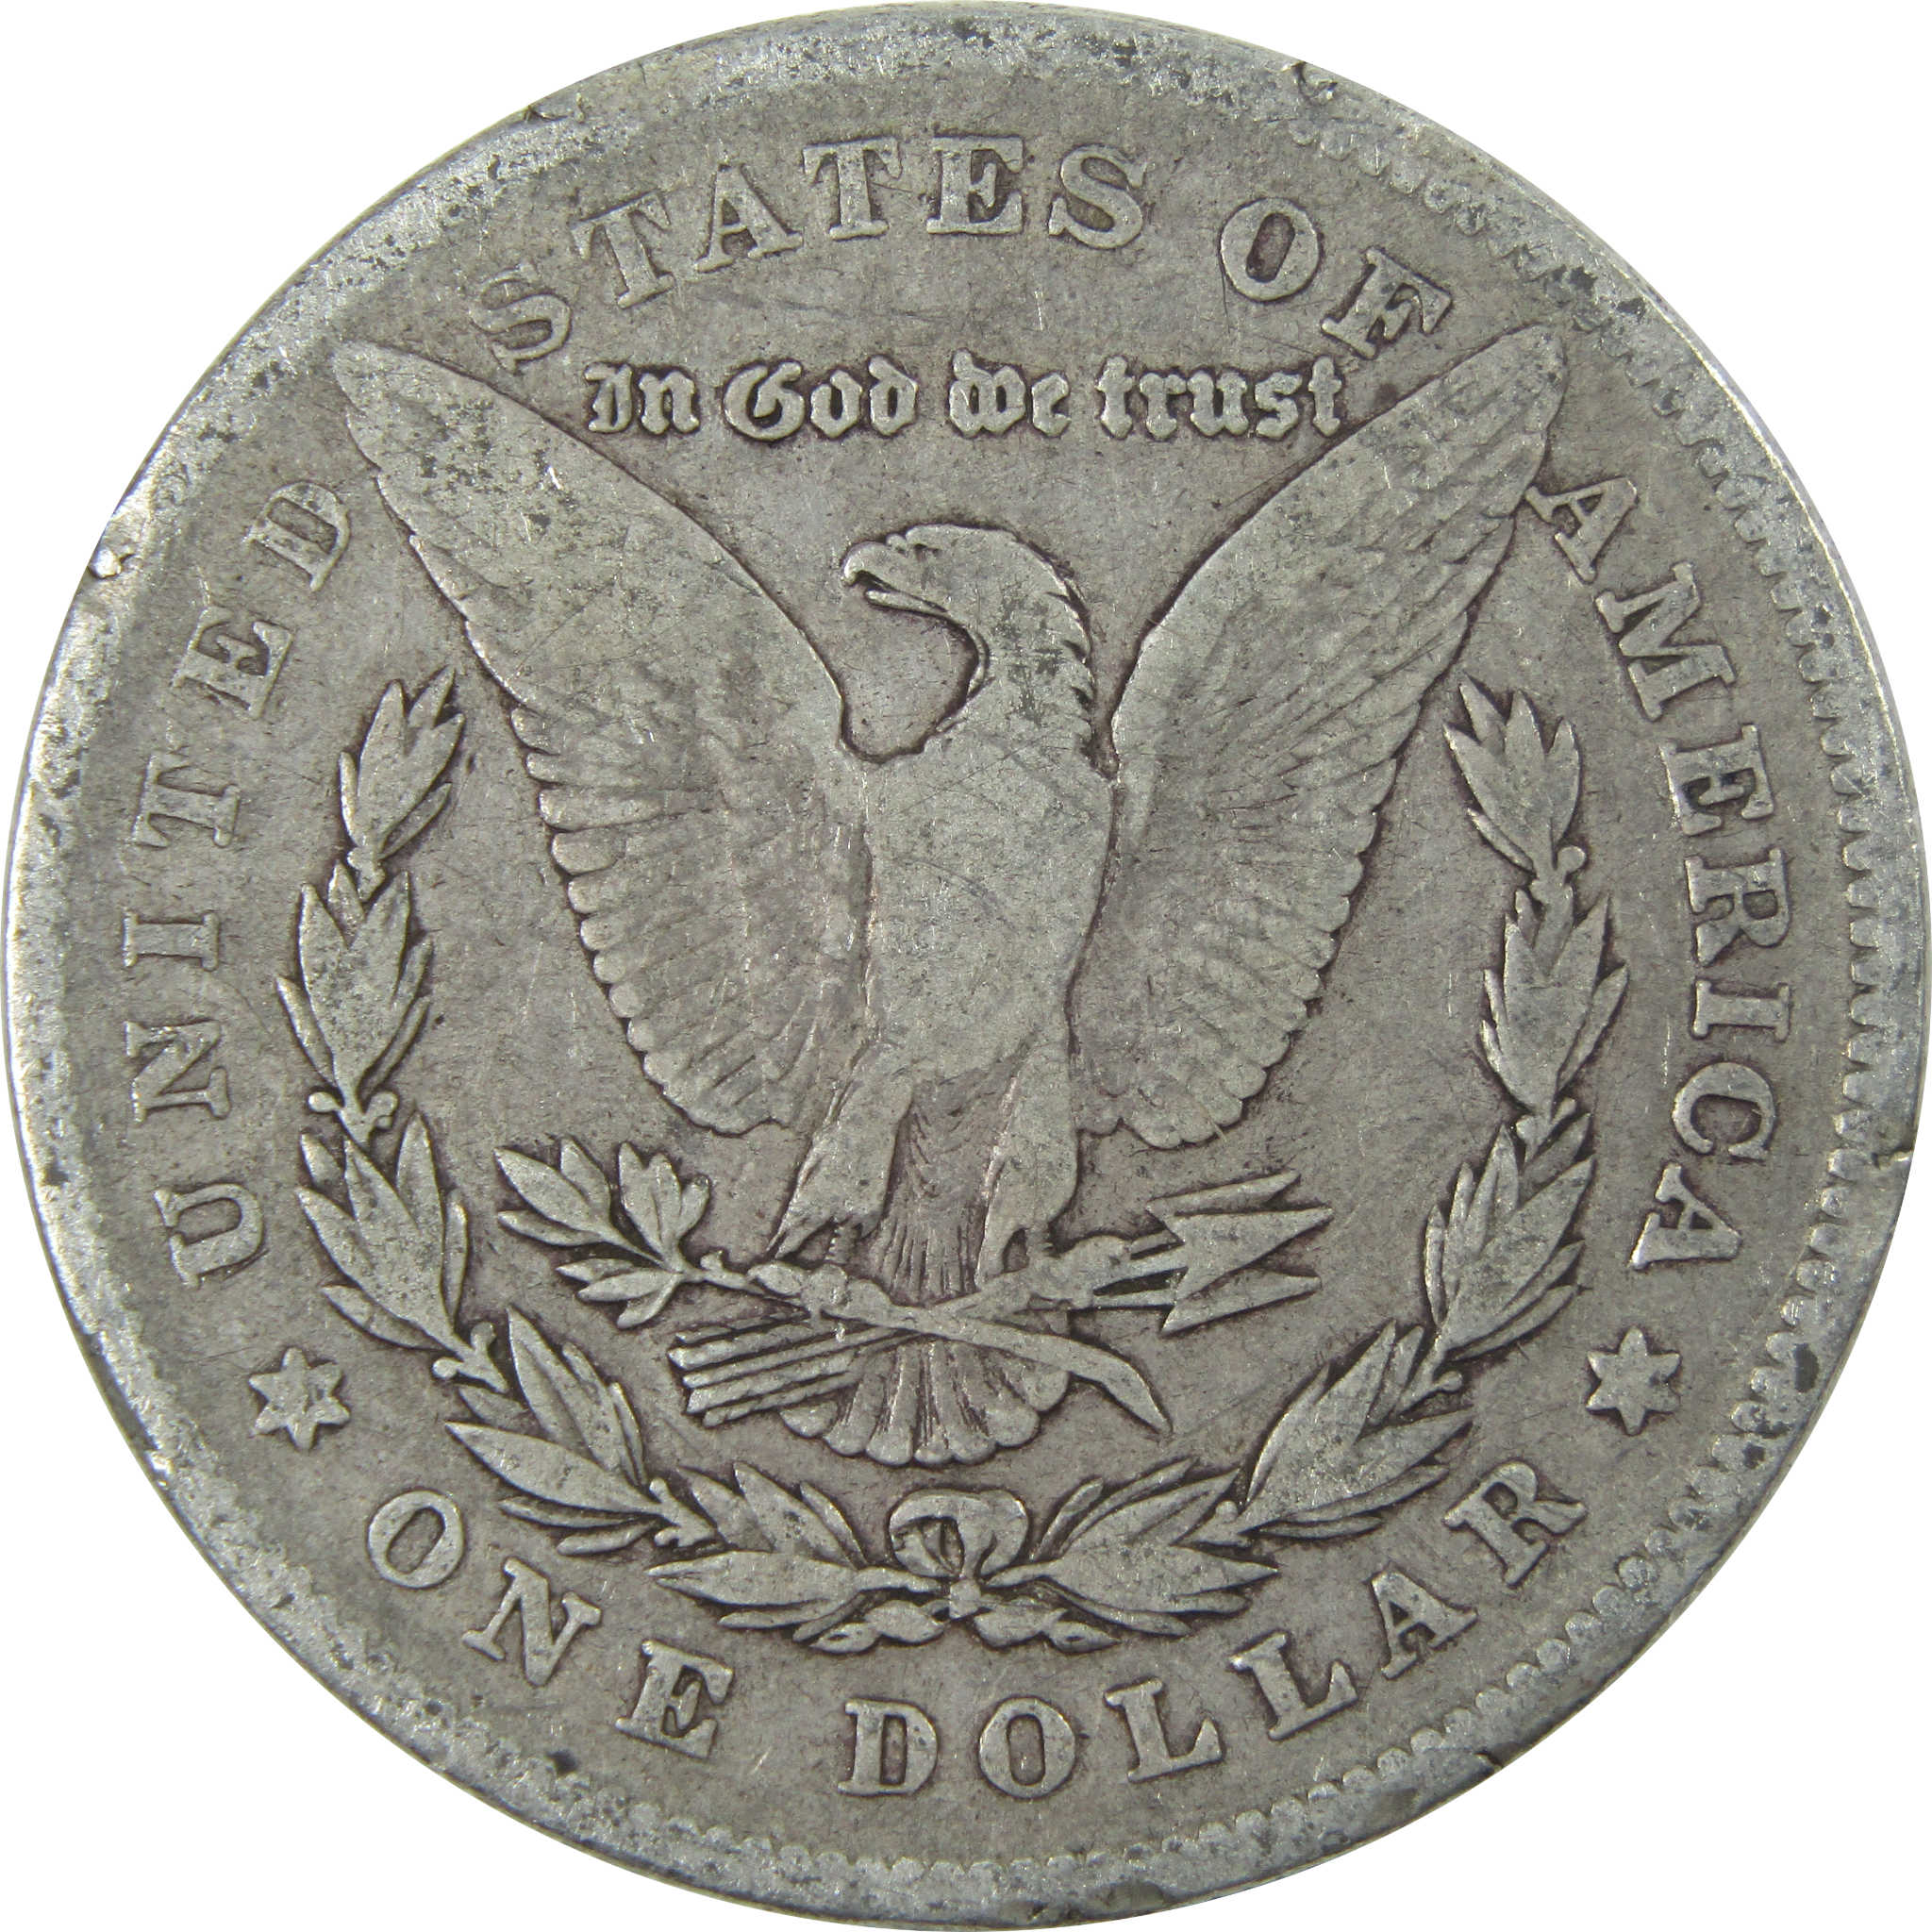 1878 Rev 78 Morgan Dollar VG Very Good Silver $1 Coin SKU:I13916 - Morgan coin - Morgan silver dollar - Morgan silver dollar for sale - Profile Coins &amp; Collectibles